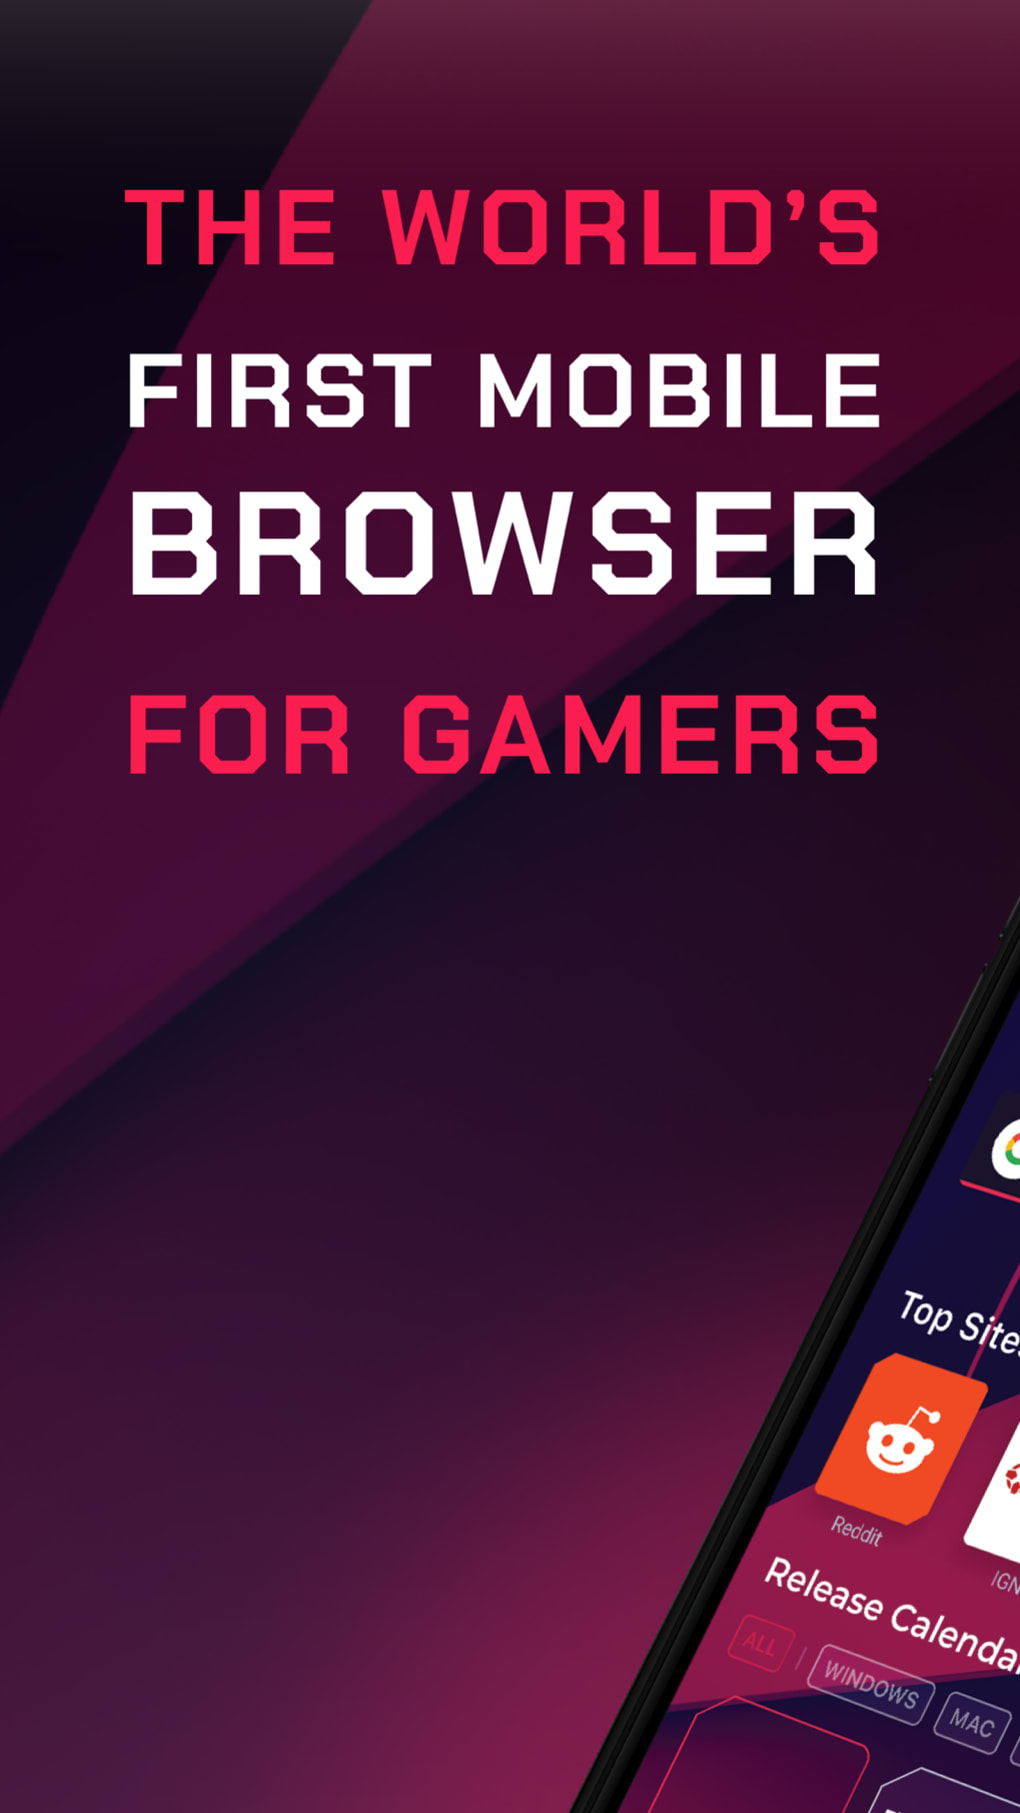 Plataforma de jogos Gx - Mobile